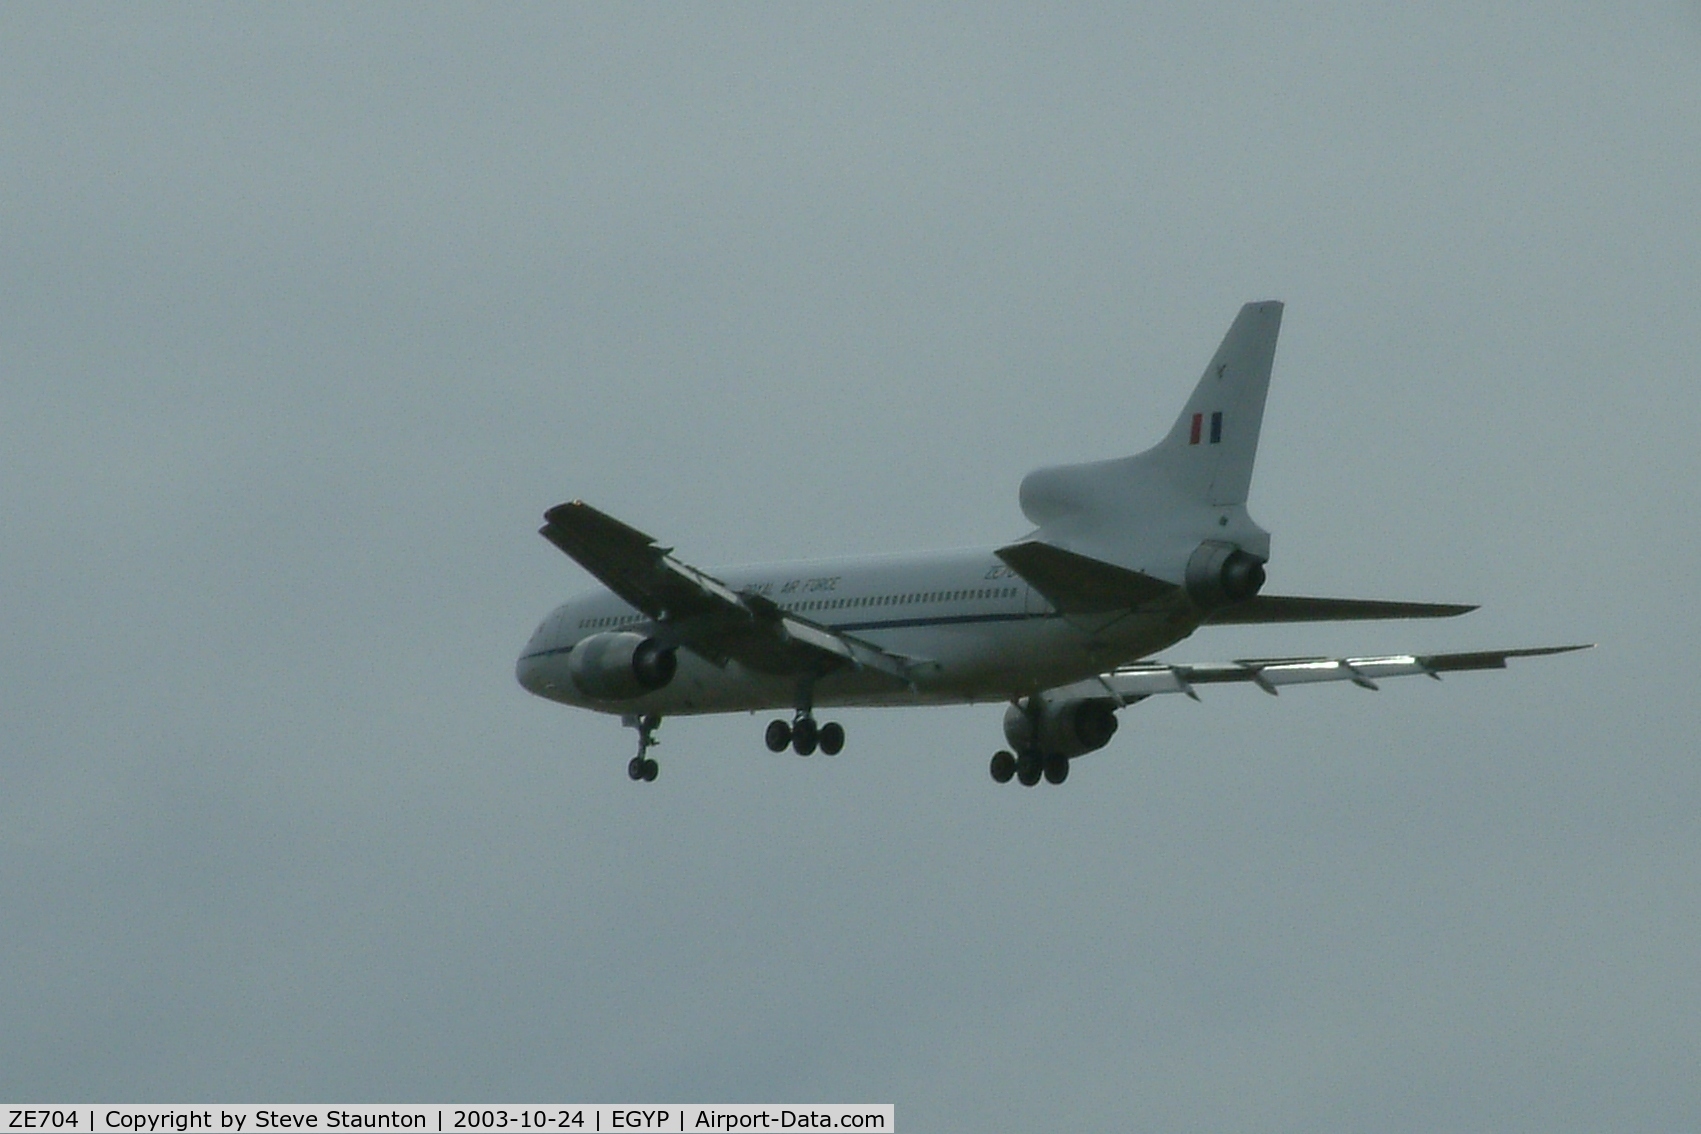 ZE704, 1980 Lockheed L-1011-385-3 TriStar C2 (500) C/N 193Y-1186, RAF Tristar approacing MPN, Falkland Islands